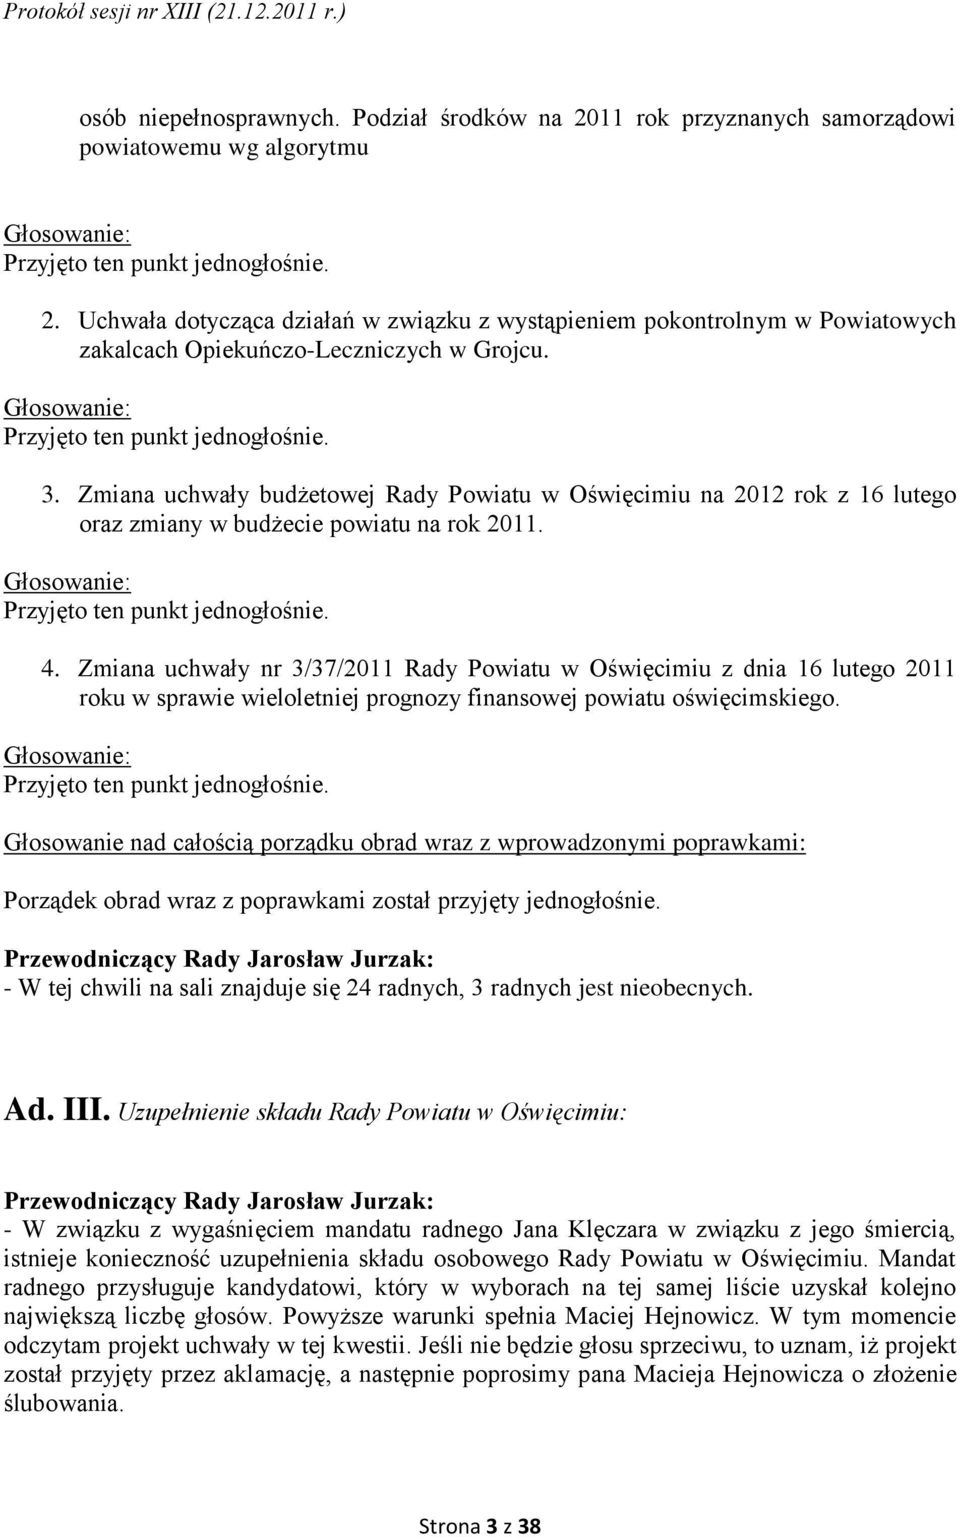 Głosowanie: Przyjęto ten punkt jednogłośnie. 4. Zmiana uchwały nr 3/37/2011 Rady Powiatu w Oświęcimiu z dnia 16 lutego 2011 roku w sprawie wieloletniej prognozy finansowej powiatu oświęcimskiego.